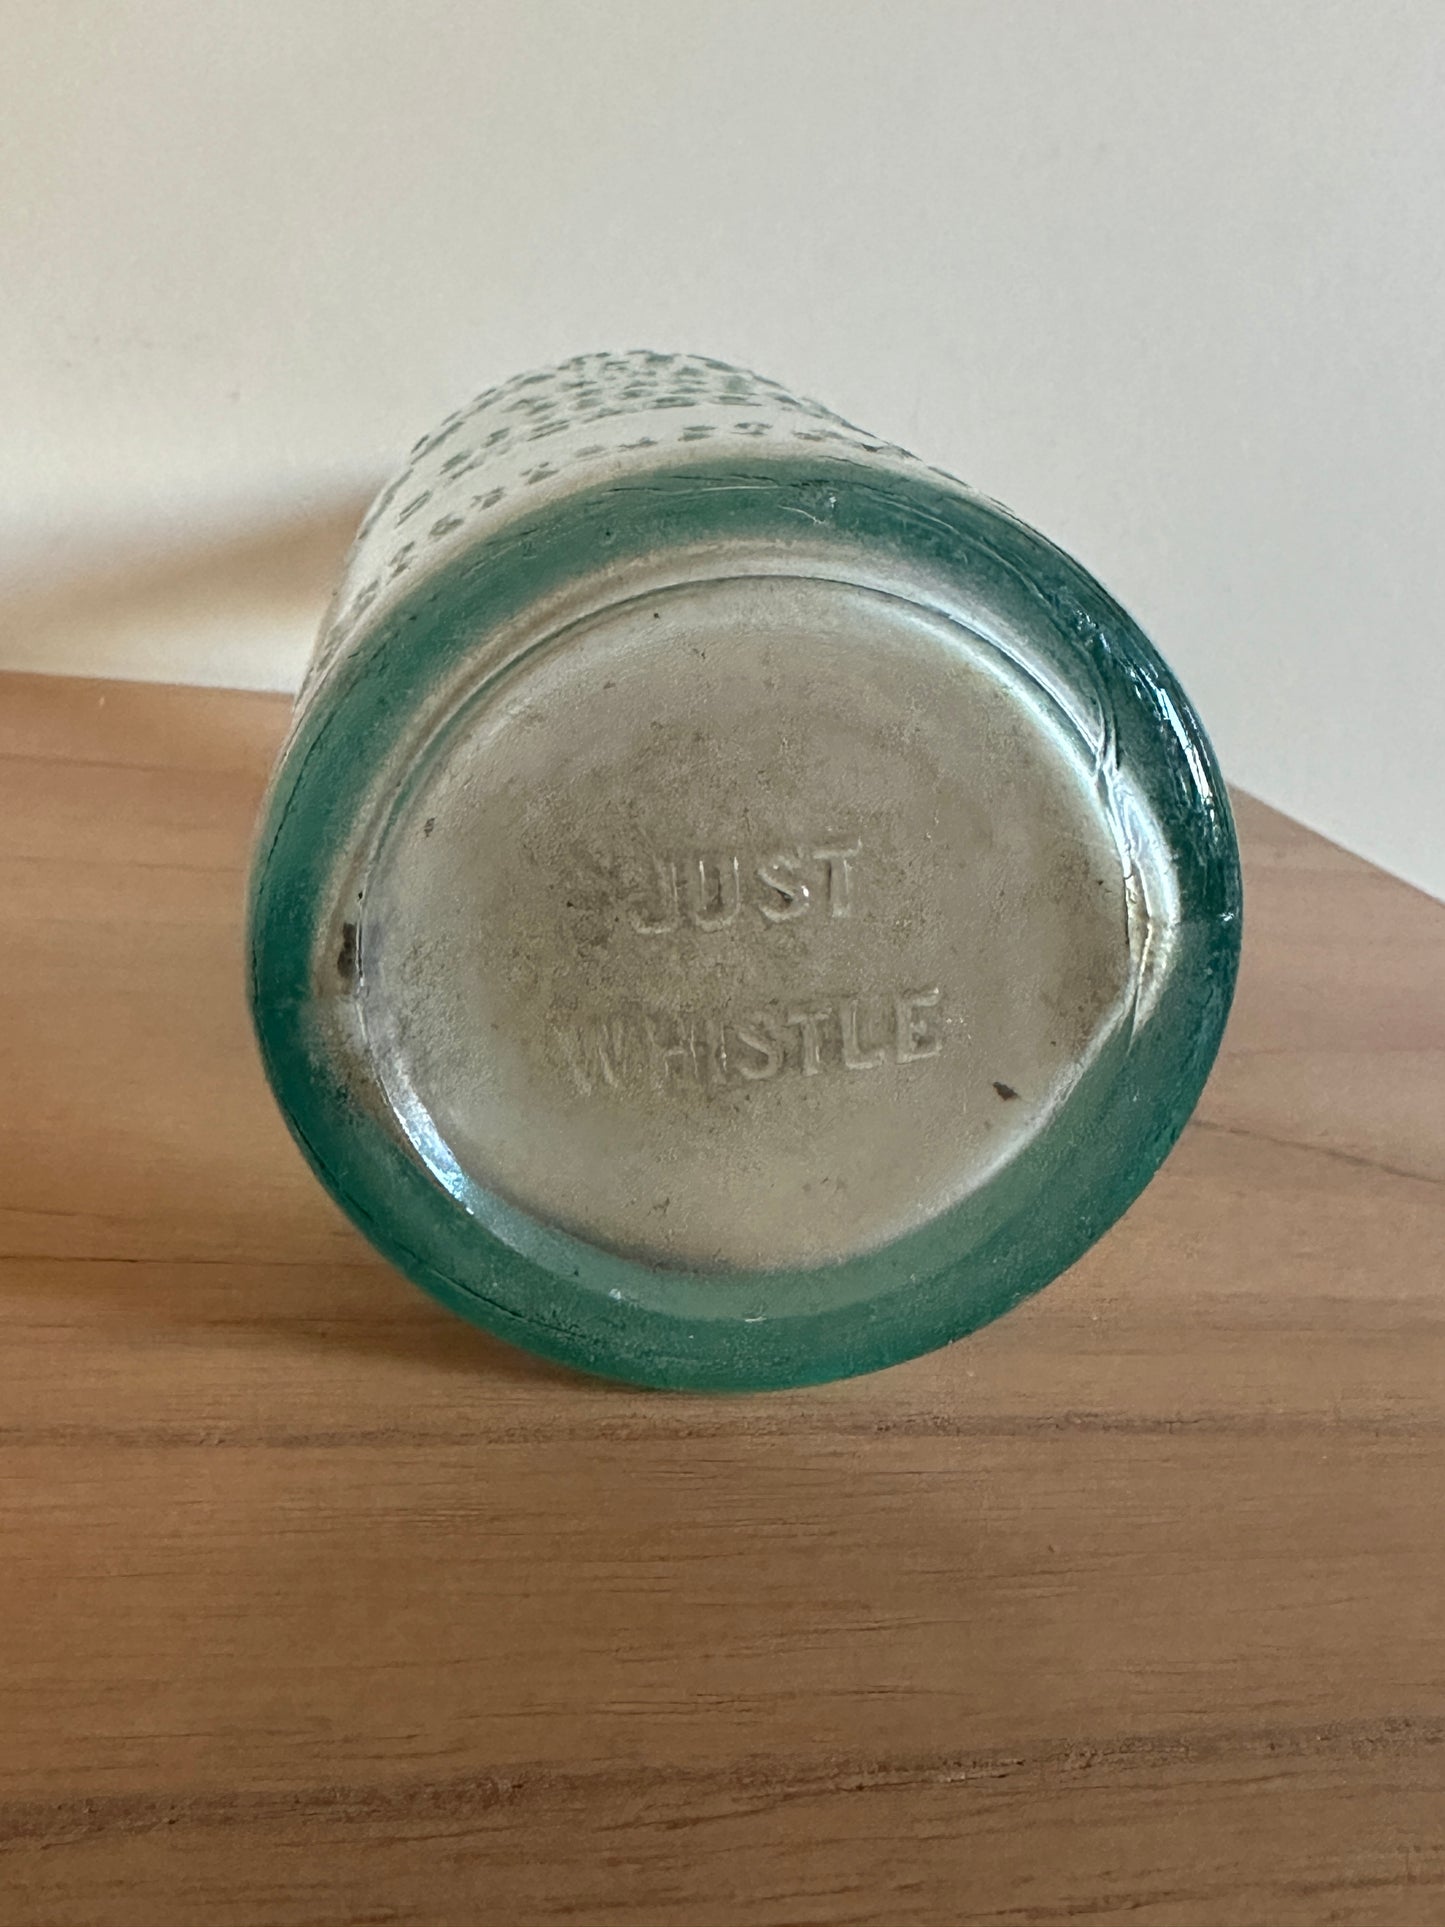 Whistle Bottling Company 1 Liter Glass Bottle (Circa 1925)